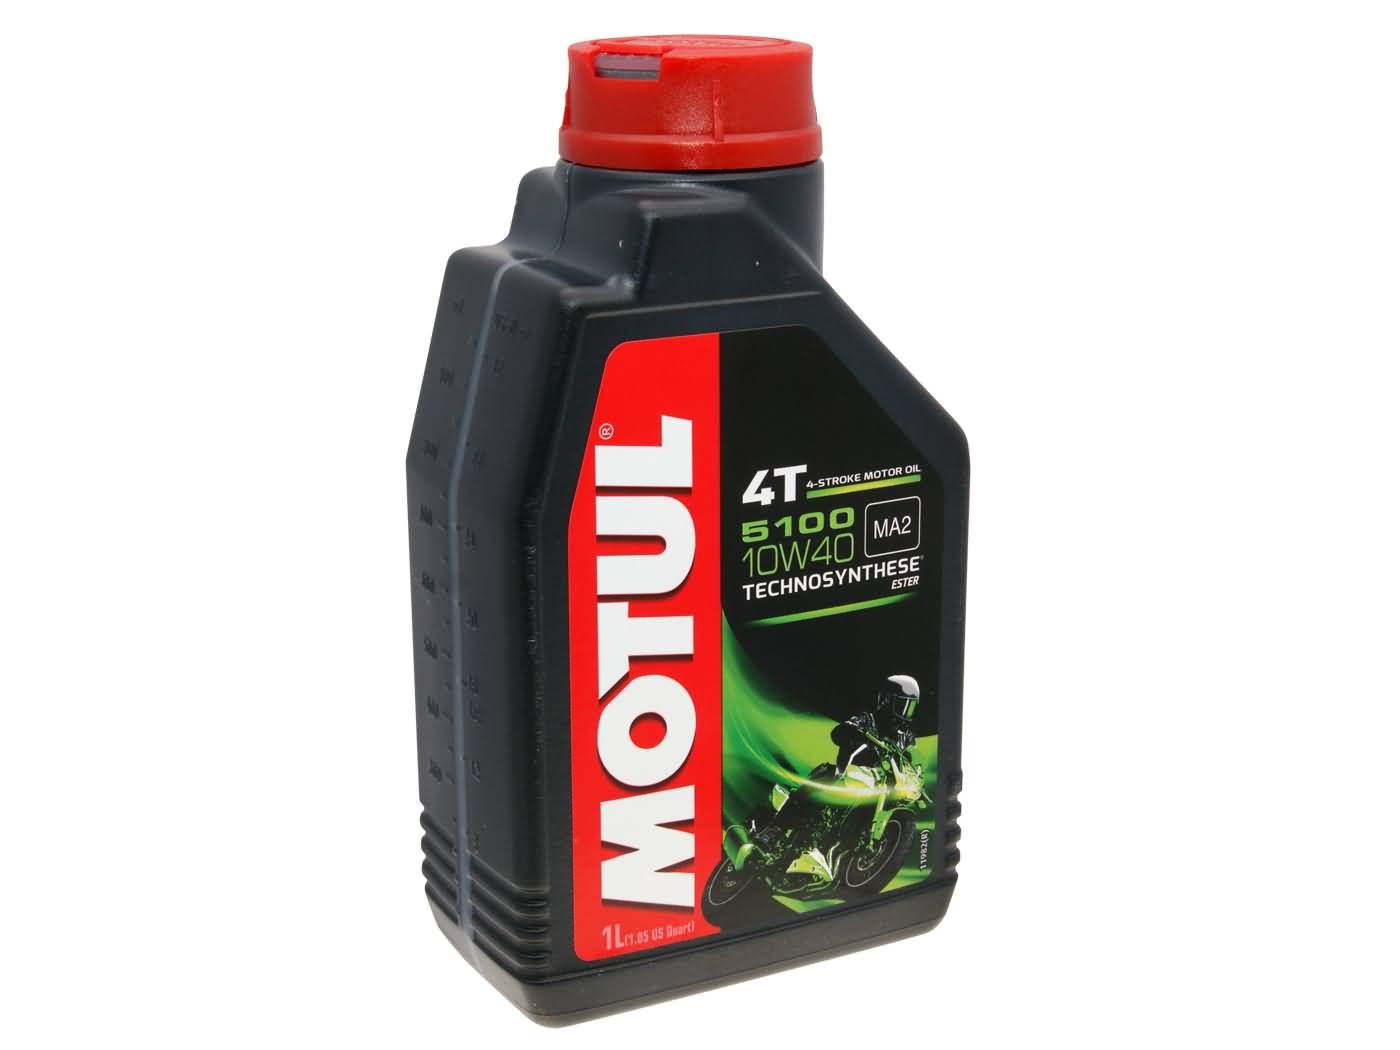 Motul Engine Oil 4-stroke 4T 5100 10W40 1 Liter